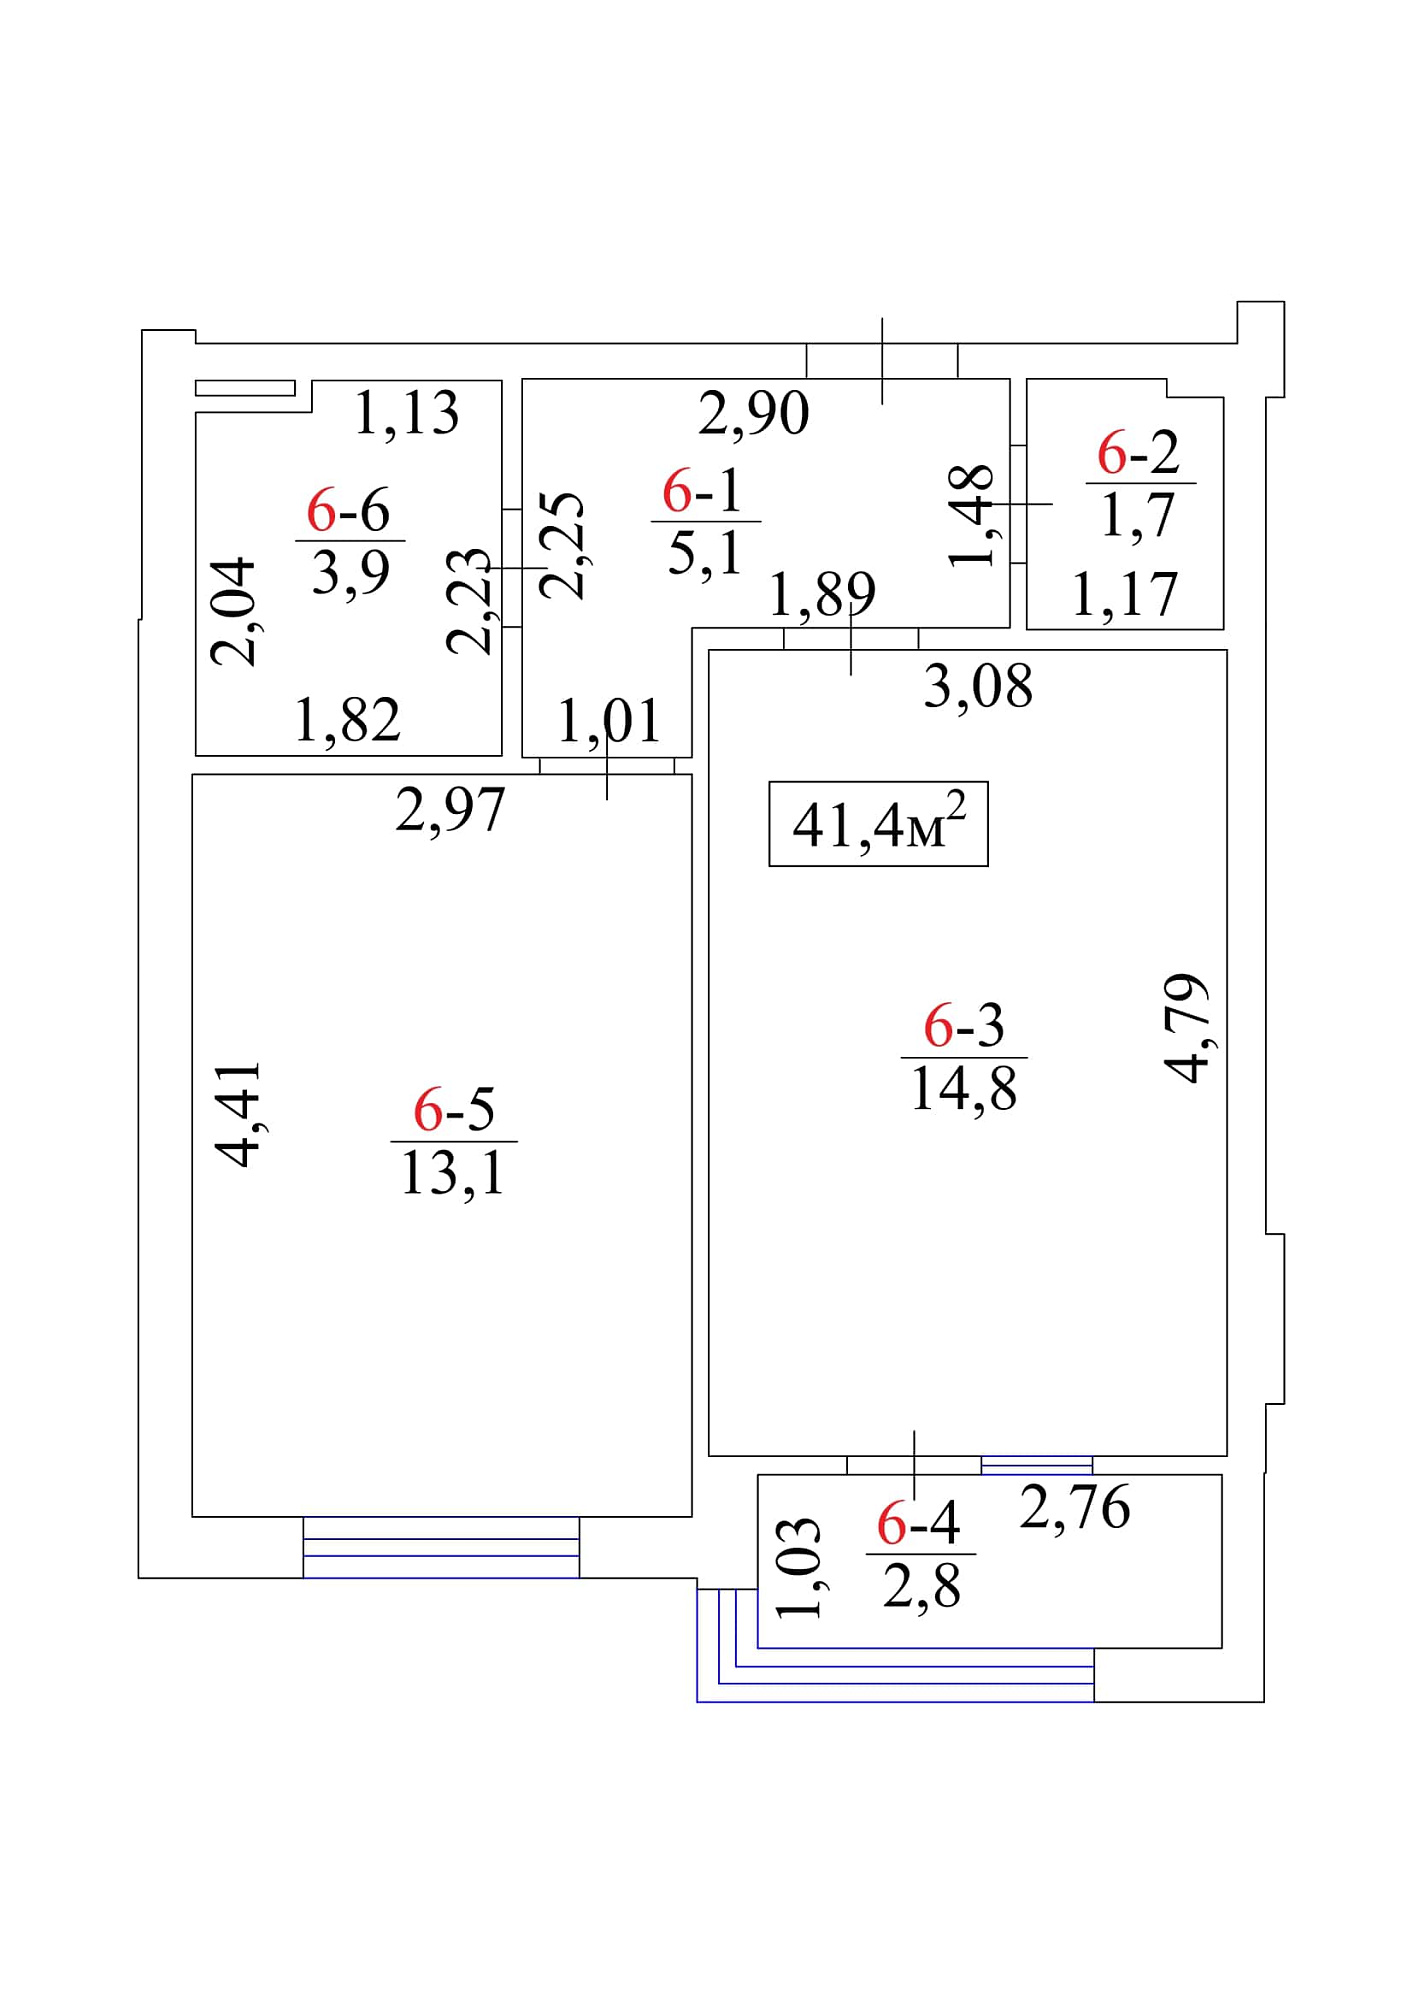 Планировка 1-к квартира площей 41.4м2, AB-01-01/00008.